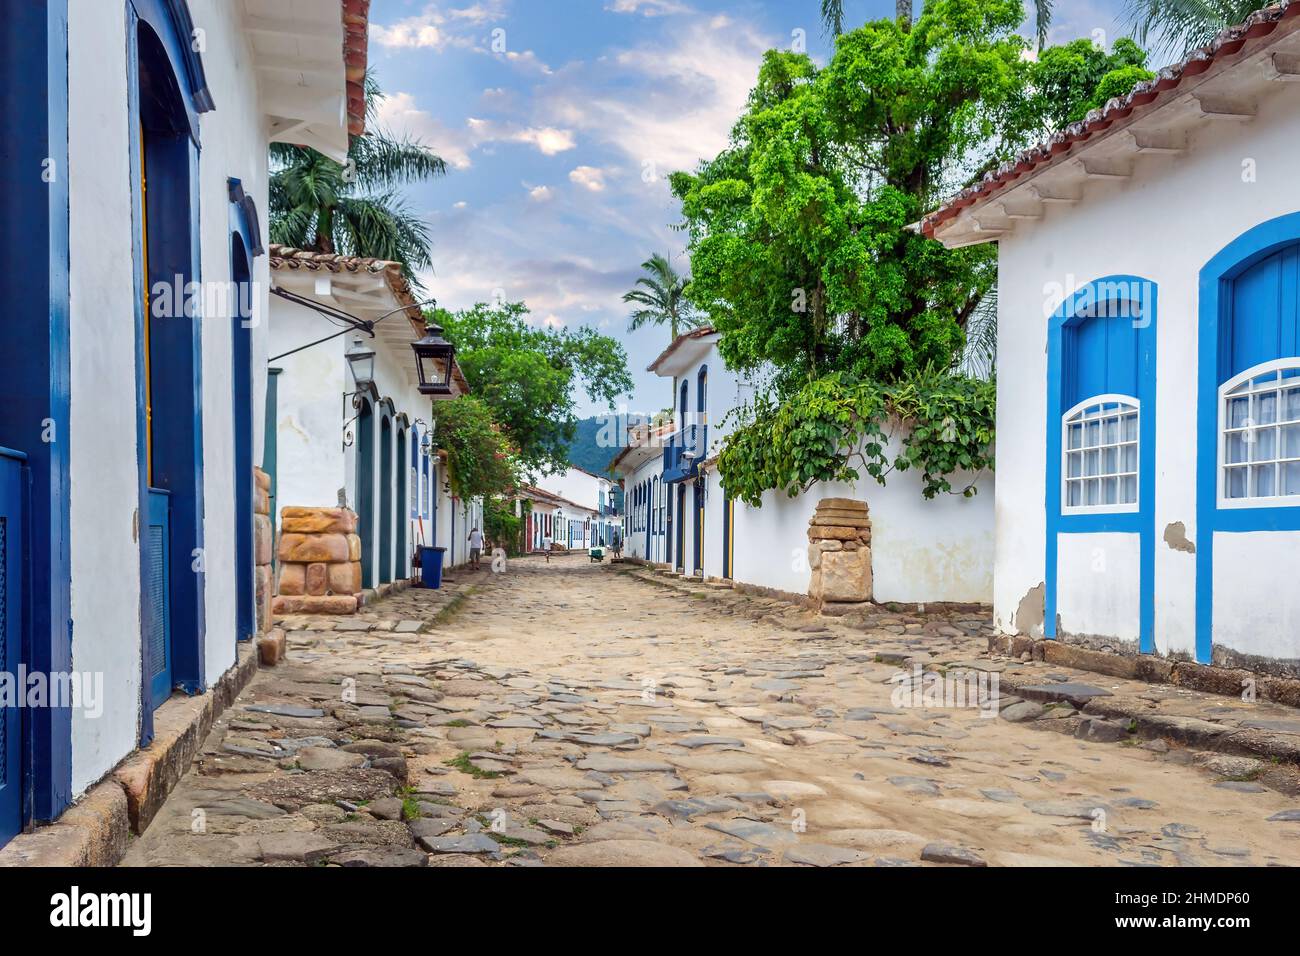 Portuguese colonial architecture in Paraty, Brazil Stock Photo